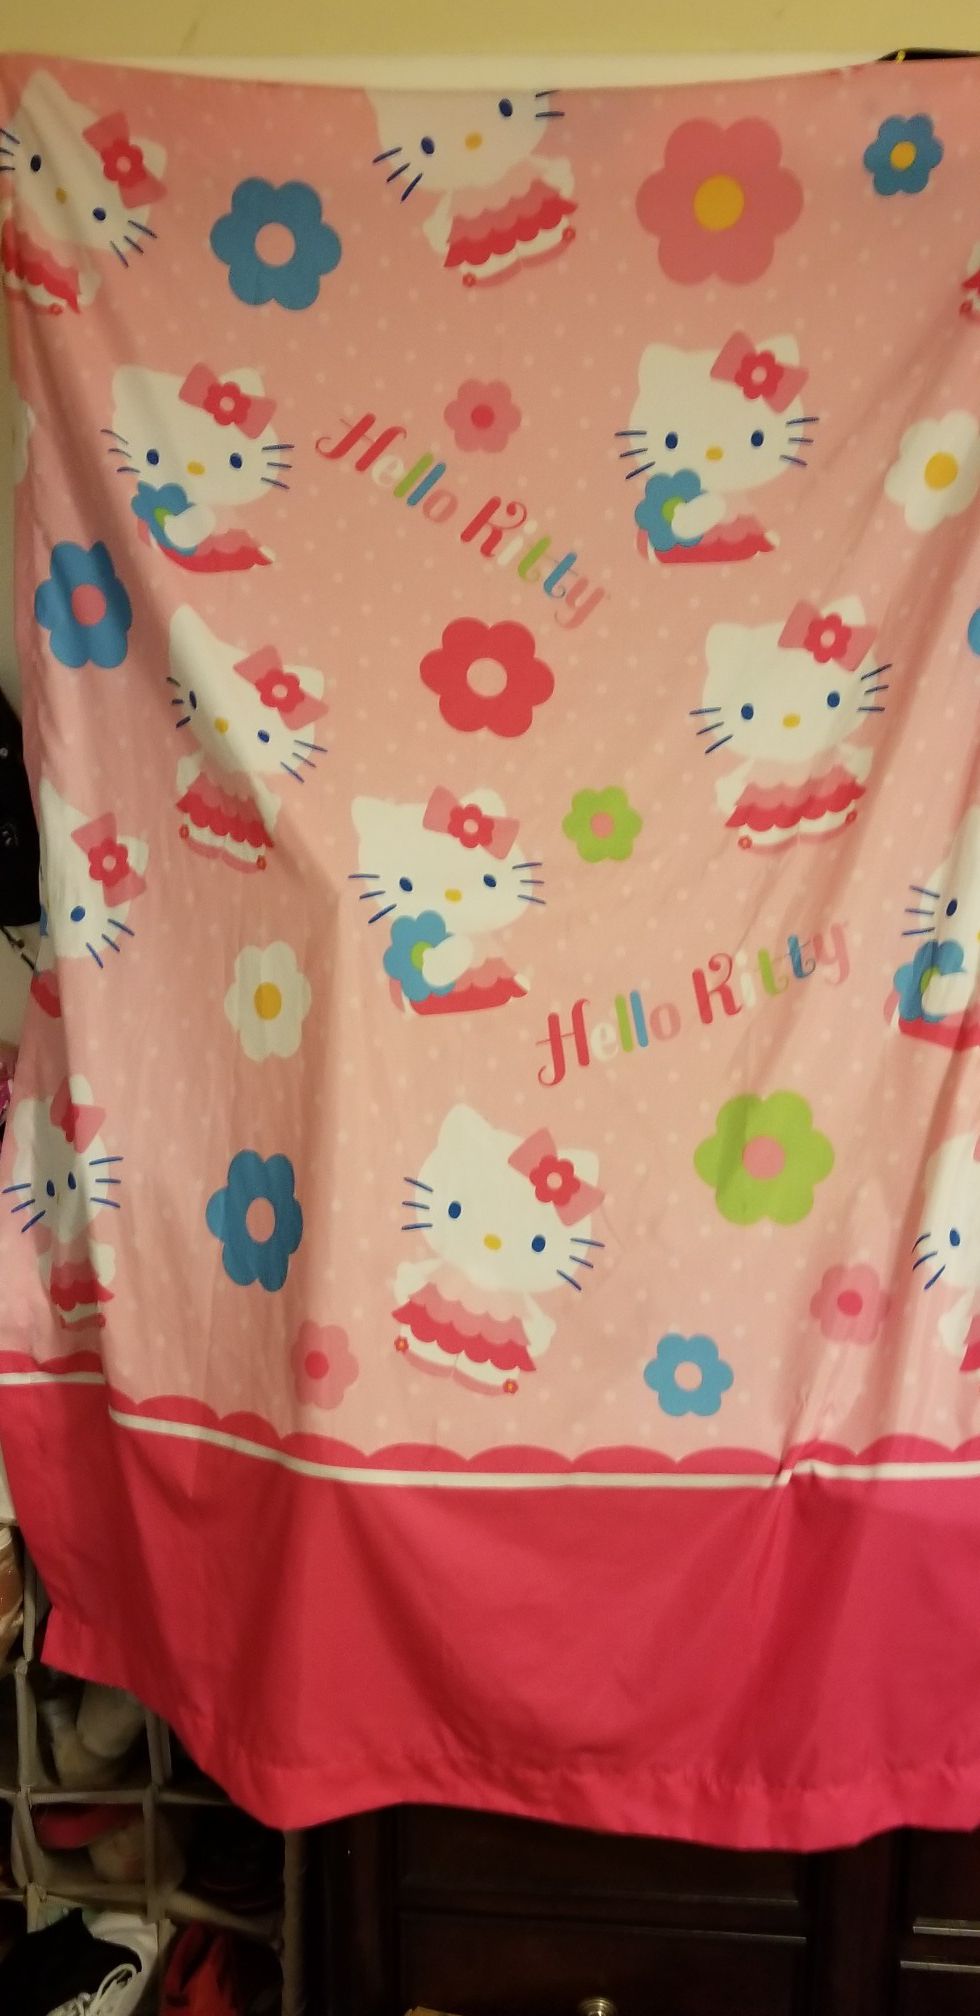 Hello Kitty curtains